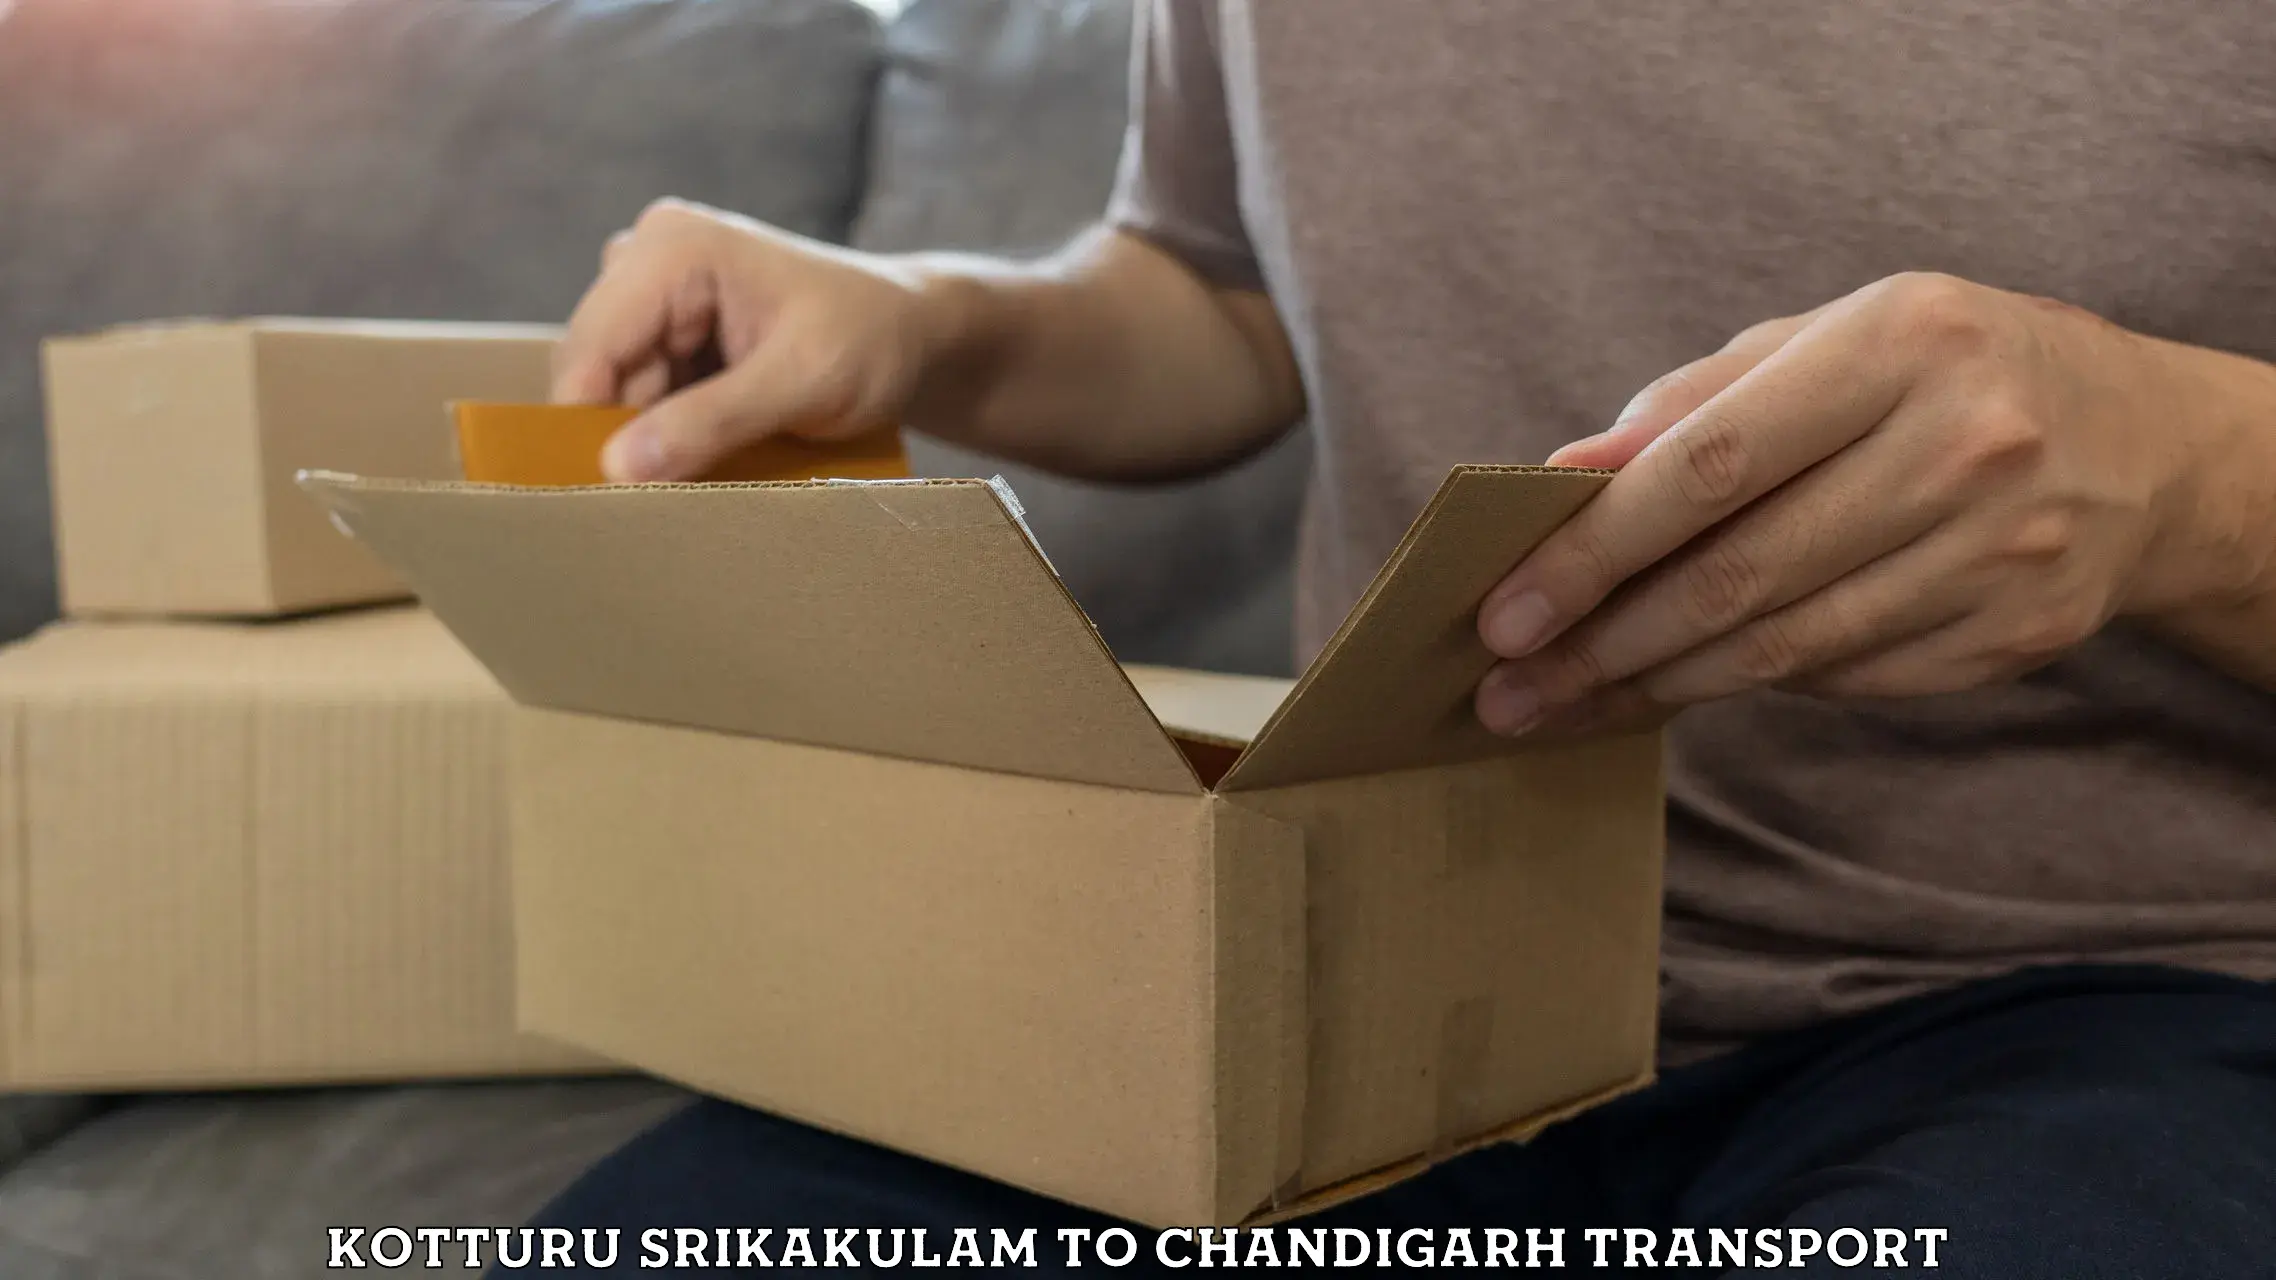 Transport in sharing Kotturu Srikakulam to Chandigarh